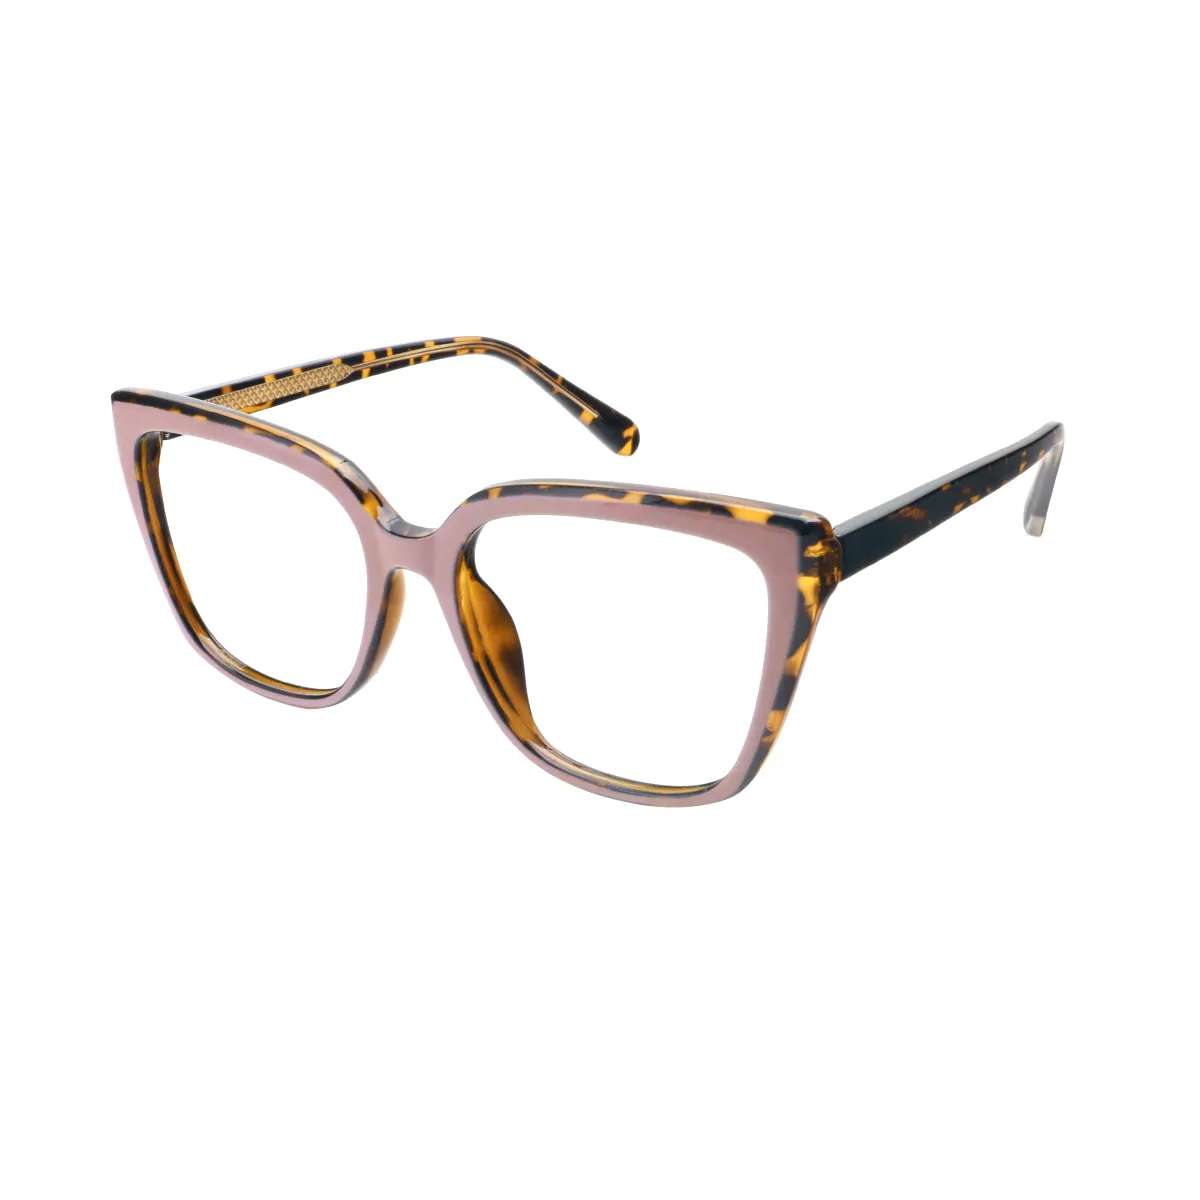 Bettina - Cat-eye Tortoiseshell-Brown Glasses for Women - EFE